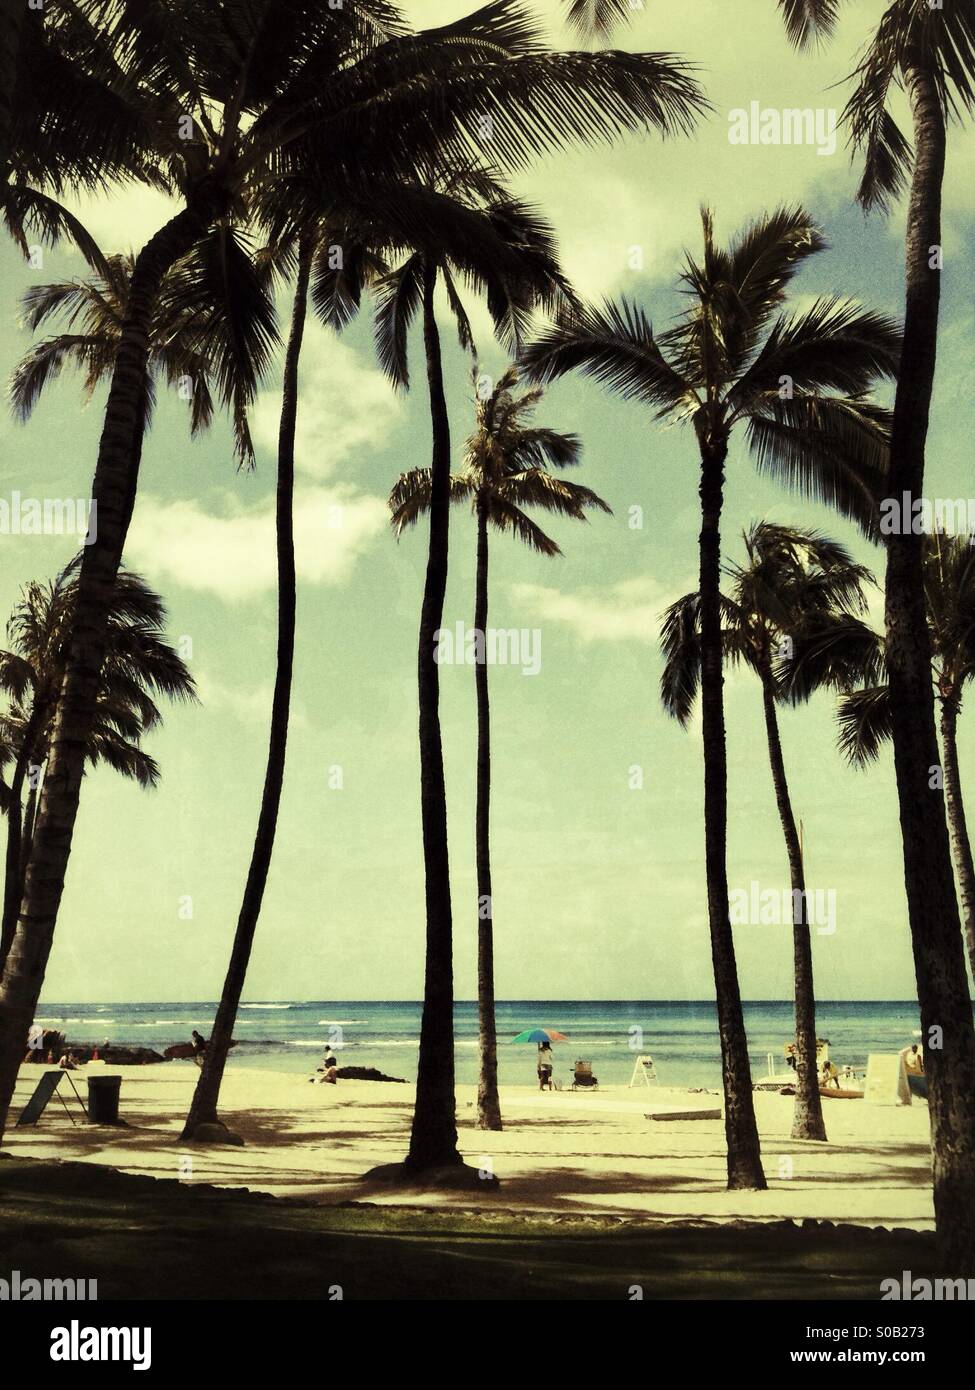 Vintage style photo of Waikiki beach through Palm trees Stock Photo